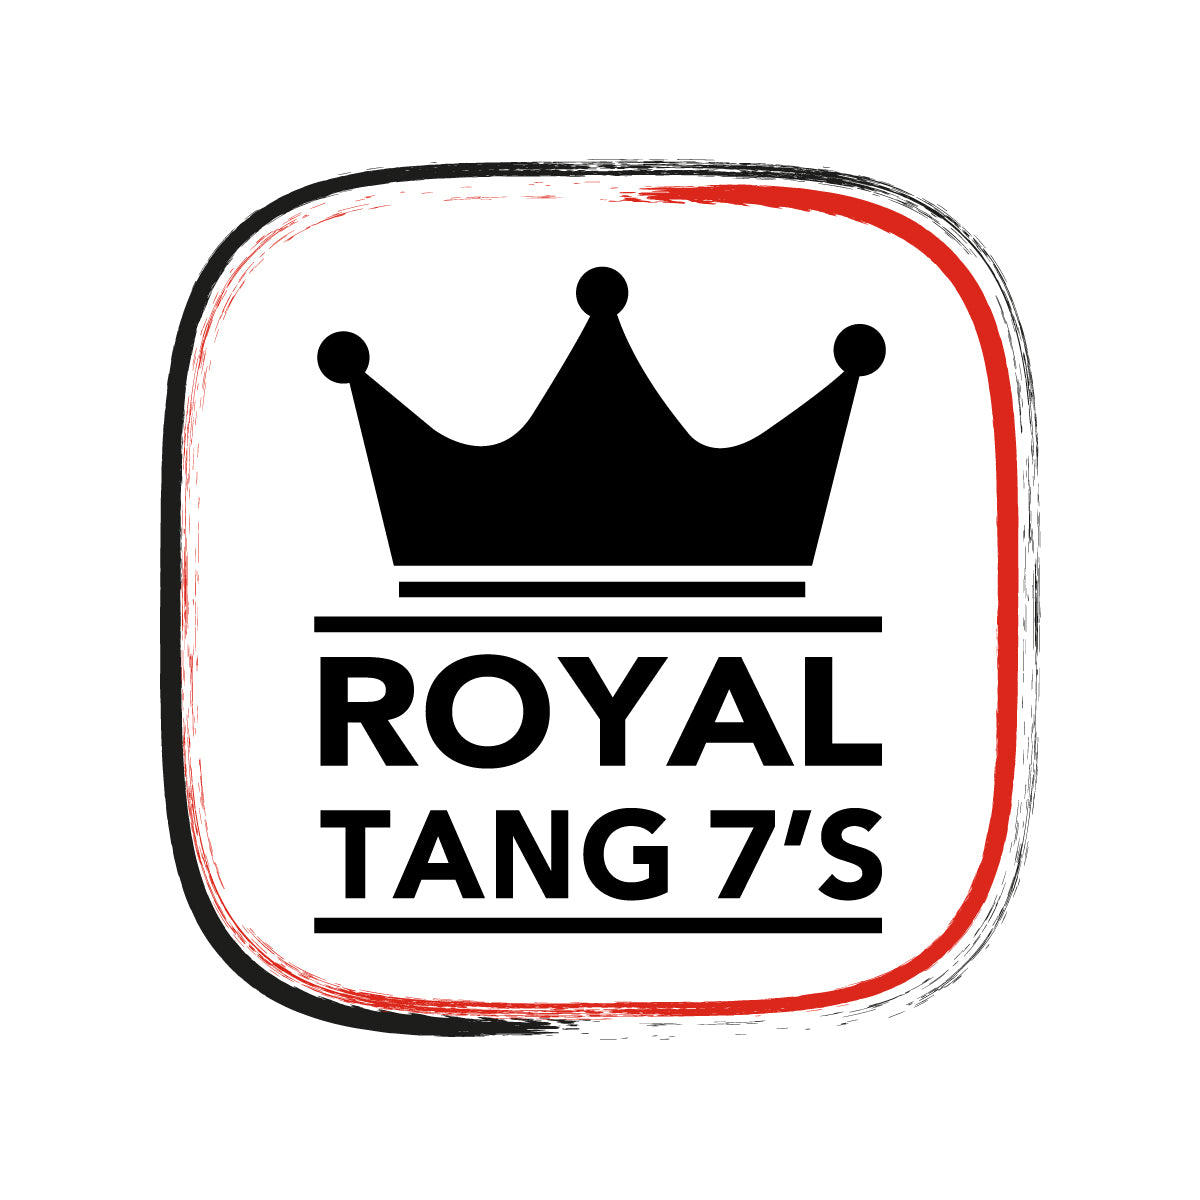 Royal Tang 7s